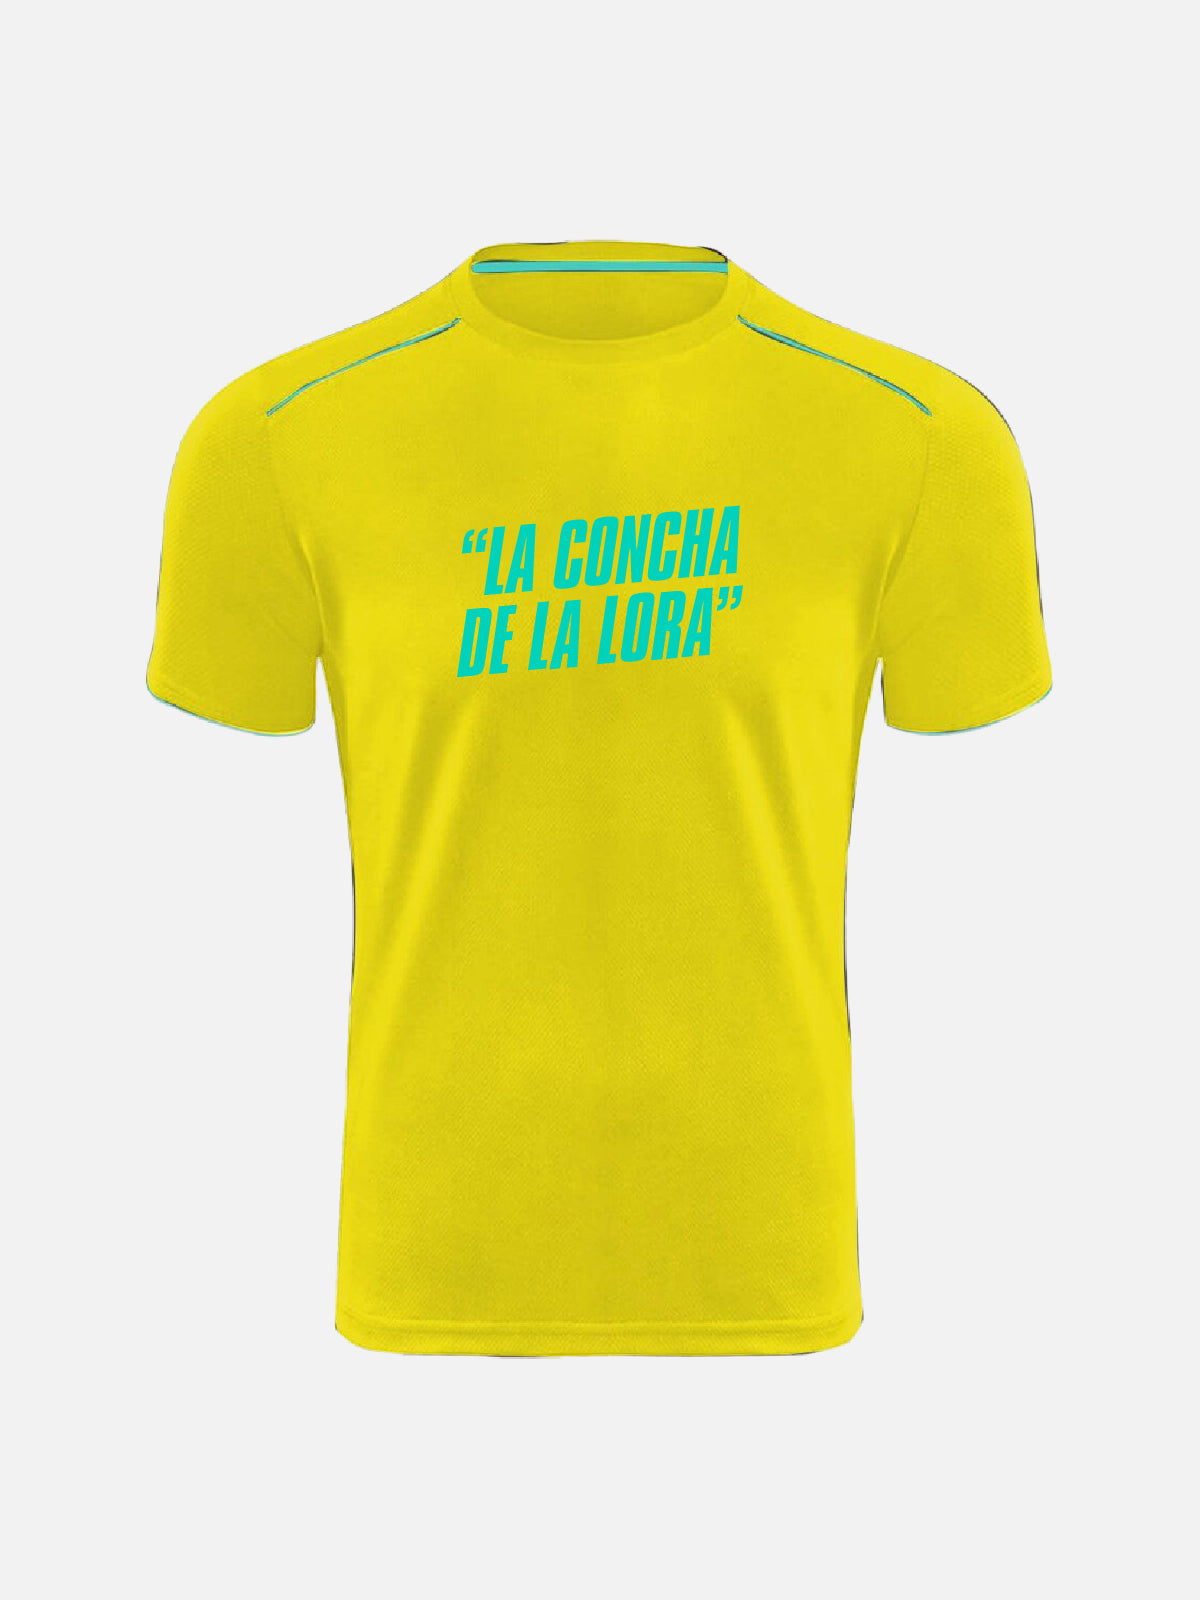 T-shirt Personalizzata - “La Concha De La Lora”